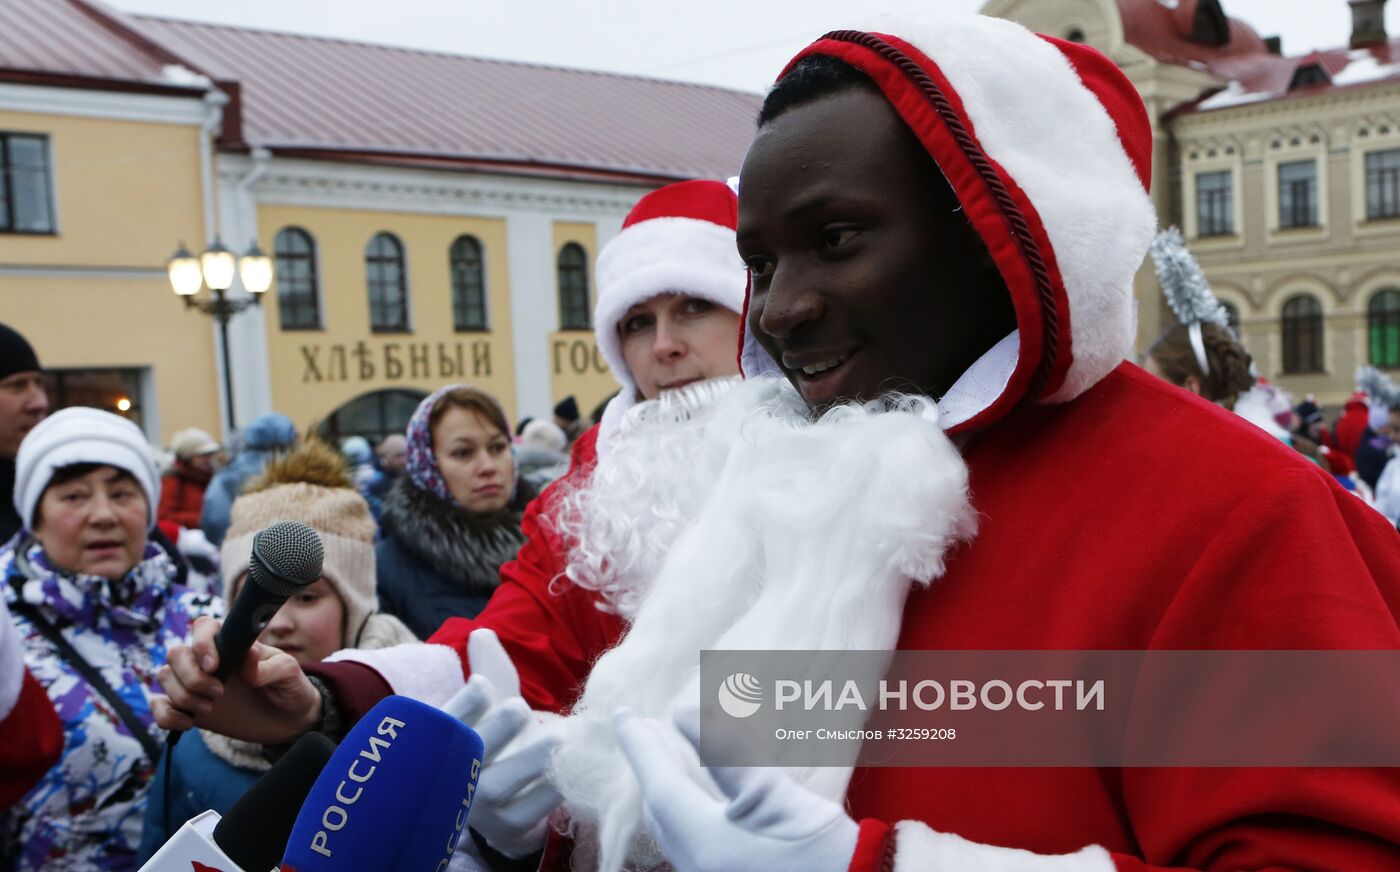 Шествие Дедов Морозов в Рыбинске